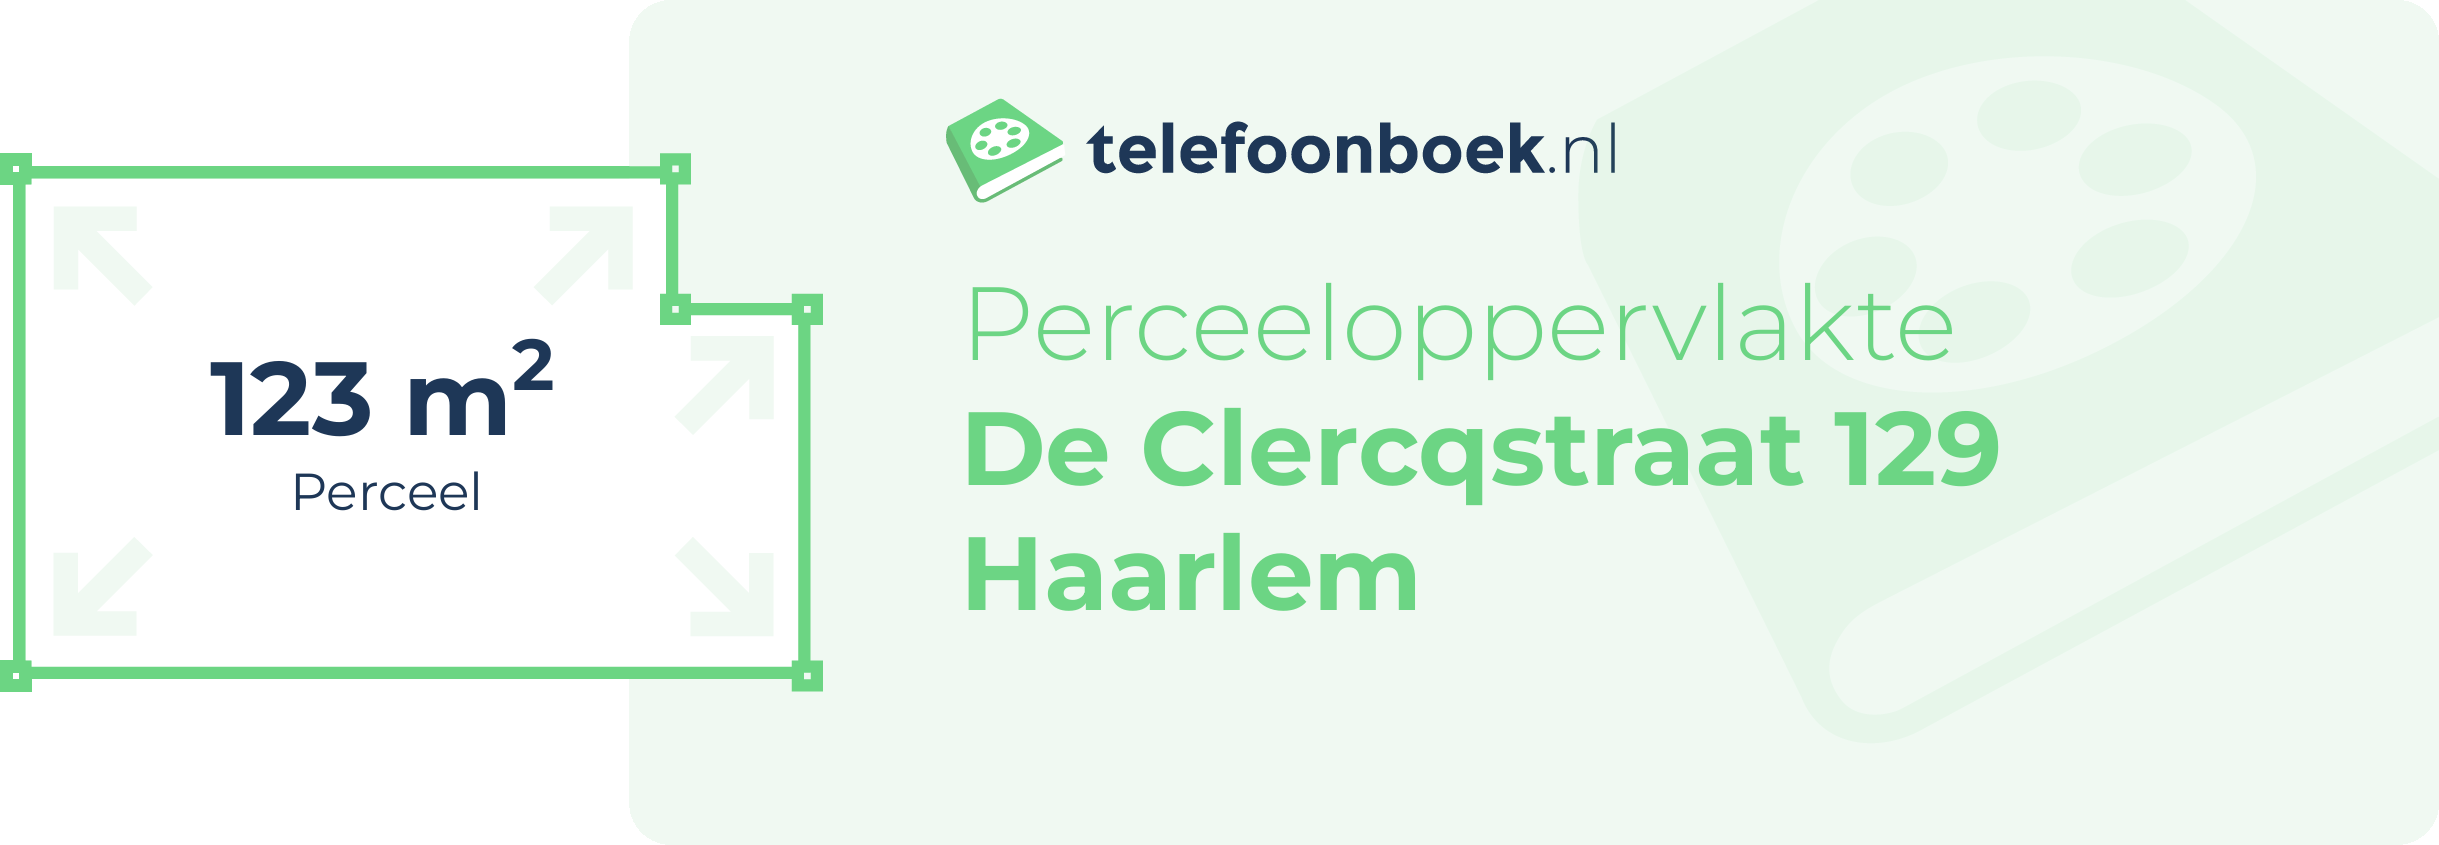 Perceeloppervlakte De Clercqstraat 129 Haarlem